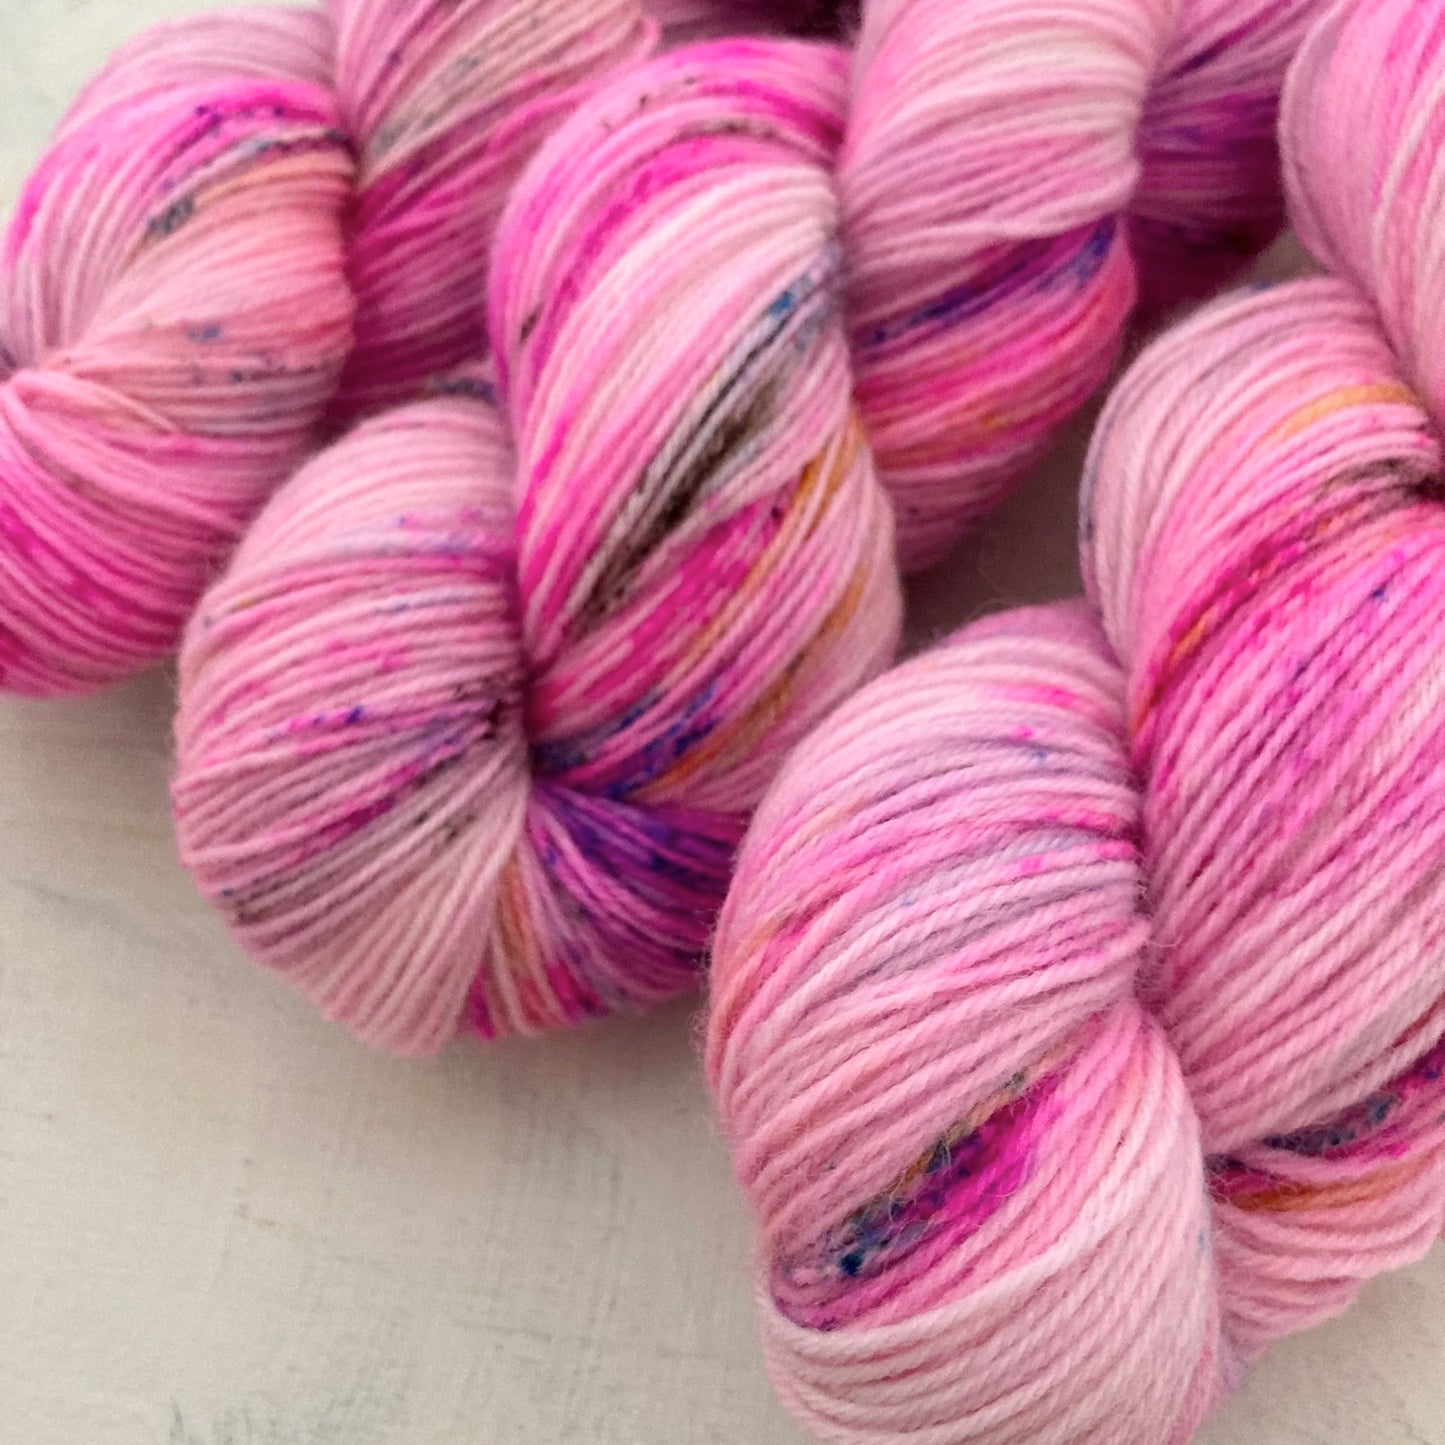 Hand-dyed yarn No.144 sock yarn "Waltz of Flowers"